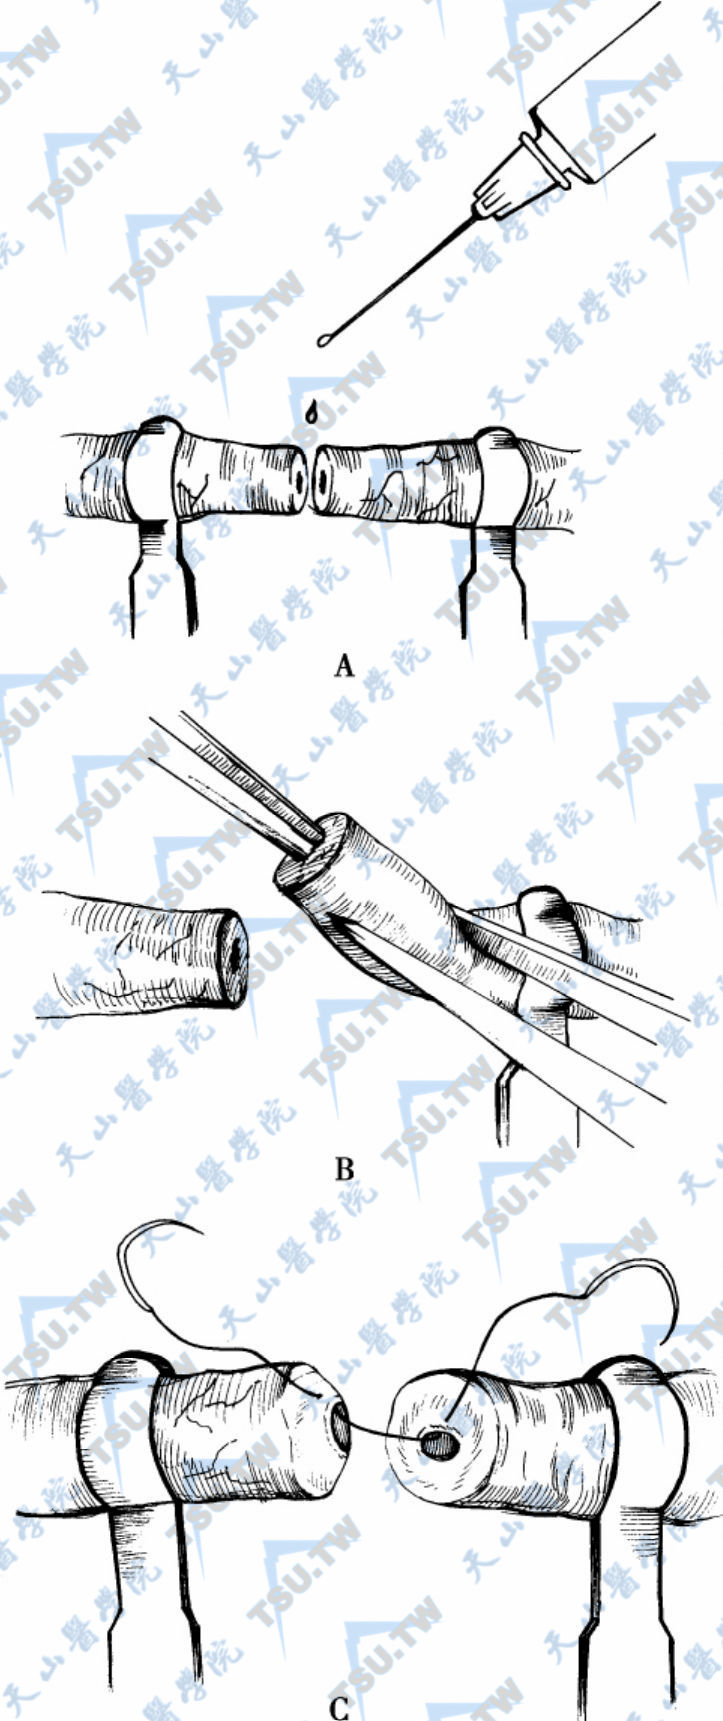 在输精管吻合练习过程中，输精管节段要时刻用生理盐水保持湿润（A）。如果输精管腔不是清晰可见，用圆头精细显微血管扩张器轻轻扩张内腔（B）。扩张后可以看到黏膜环，两个输精管末端都要仔细检查，如果用的是双针缝线的话，针从里向外穿过黏膜层（C）